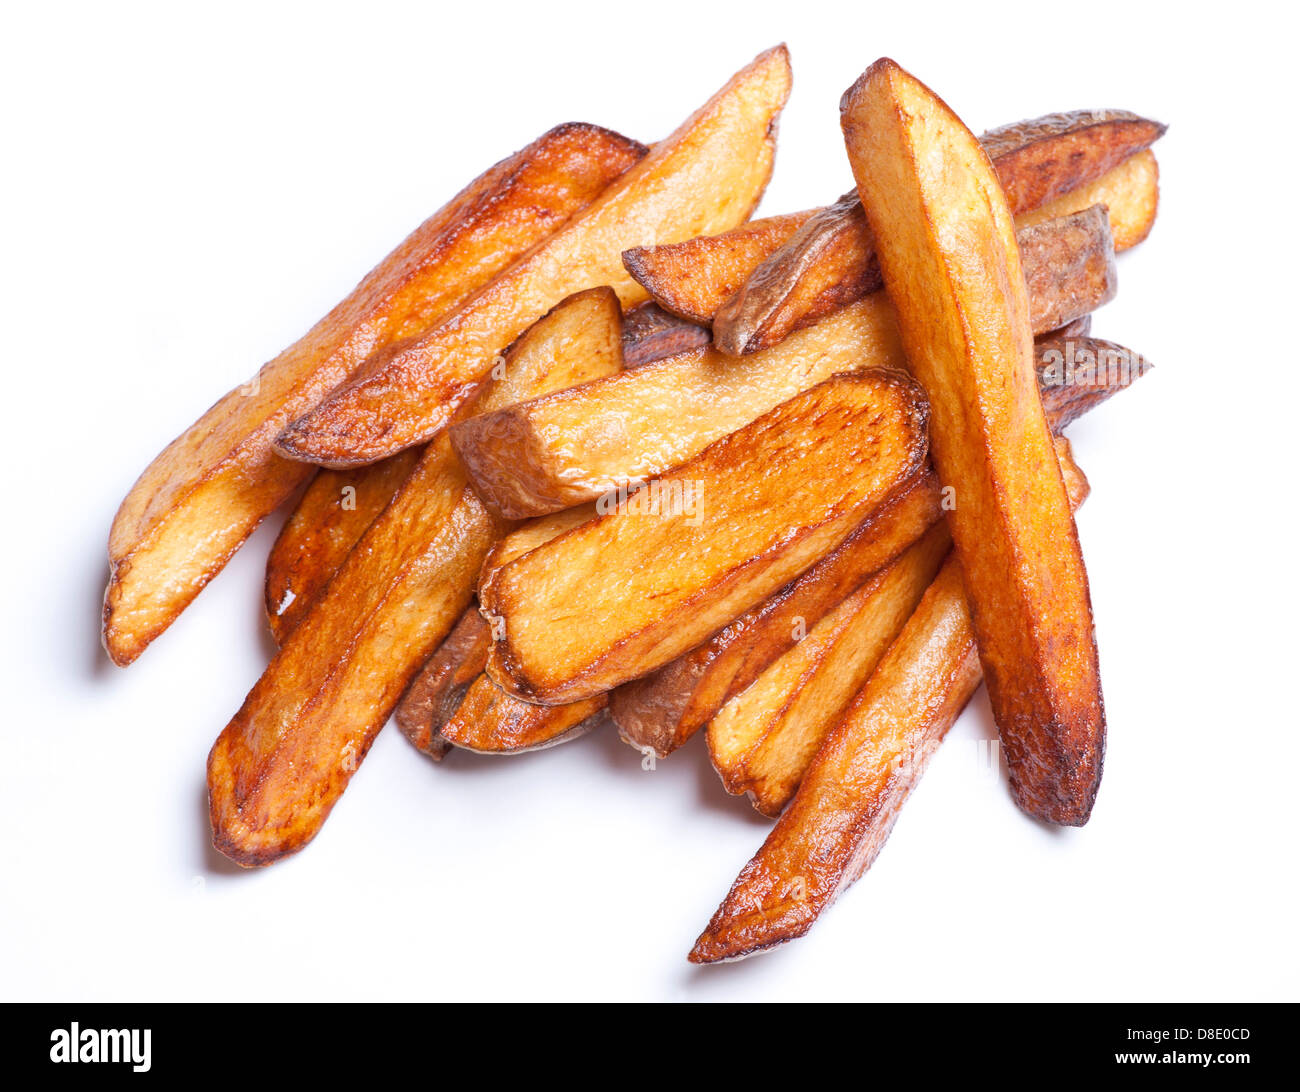 Pommes frites - hausgemachte gebackene, gebratene Kartoffeln Stockfoto